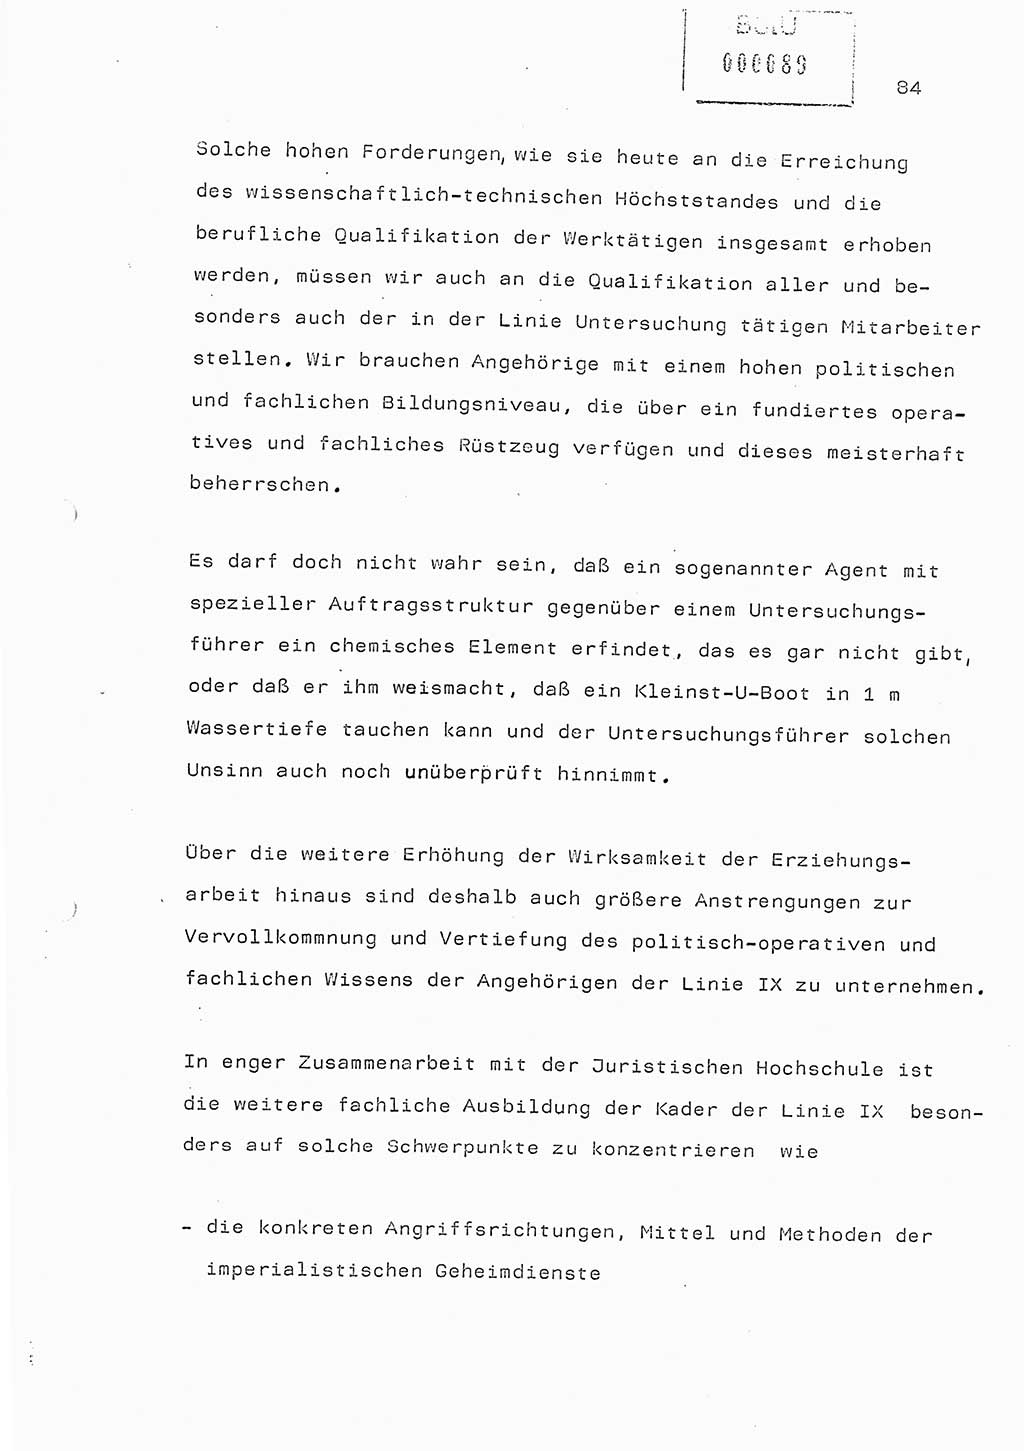 Referat (Generaloberst Erich Mielke) auf der Zentralen Dienstkonferenz am 24.5.1979 [Ministerium für Staatssicherheit (MfS), Deutsche Demokratische Republik (DDR), Der Minister], Berlin 1979, Seite 84 (Ref. DK DDR MfS Min. /79 1979, S. 84)